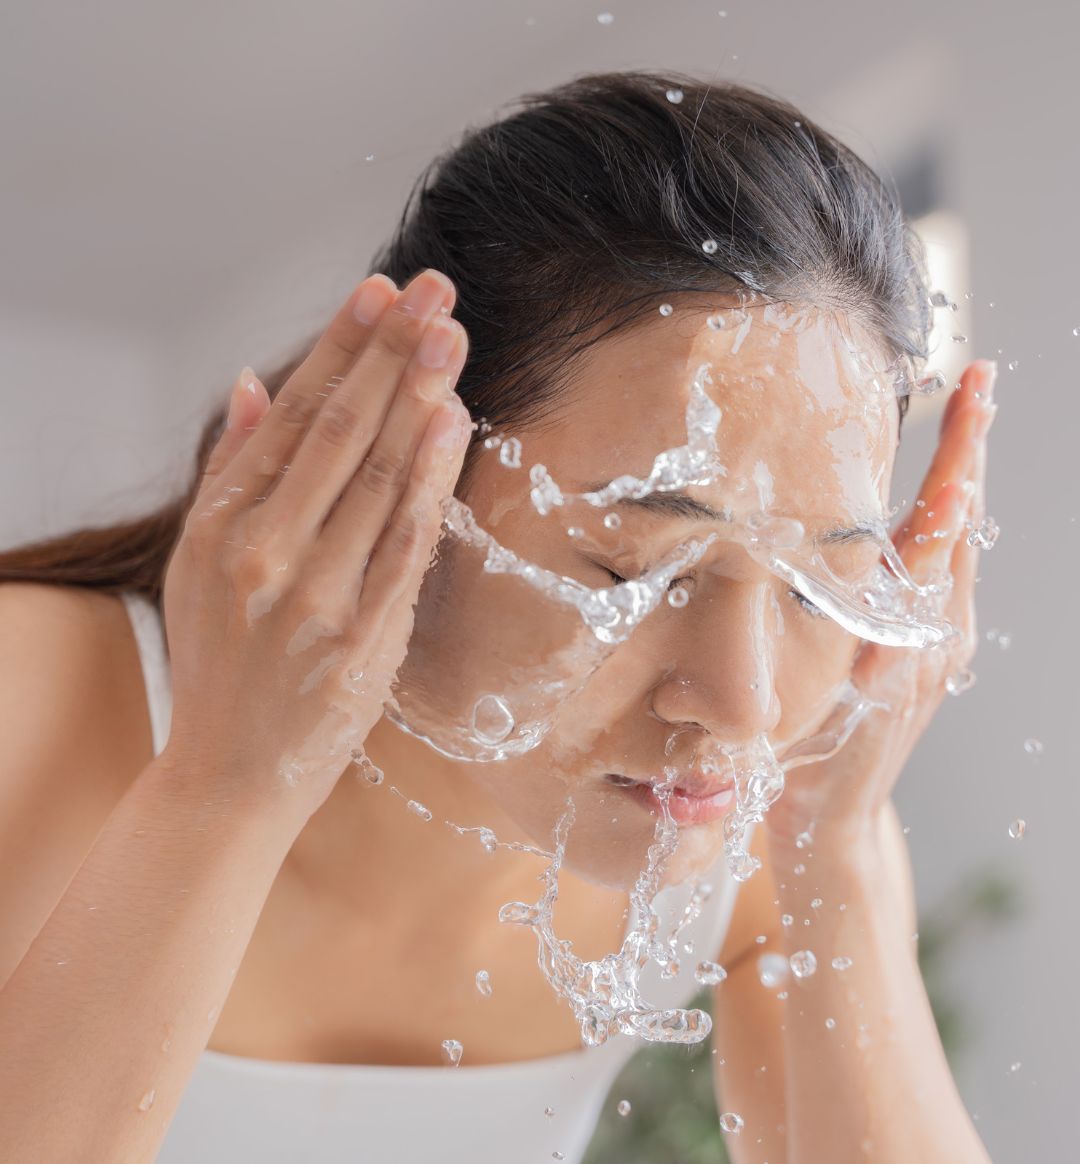 Woman_Splashing_Water_on_her_face